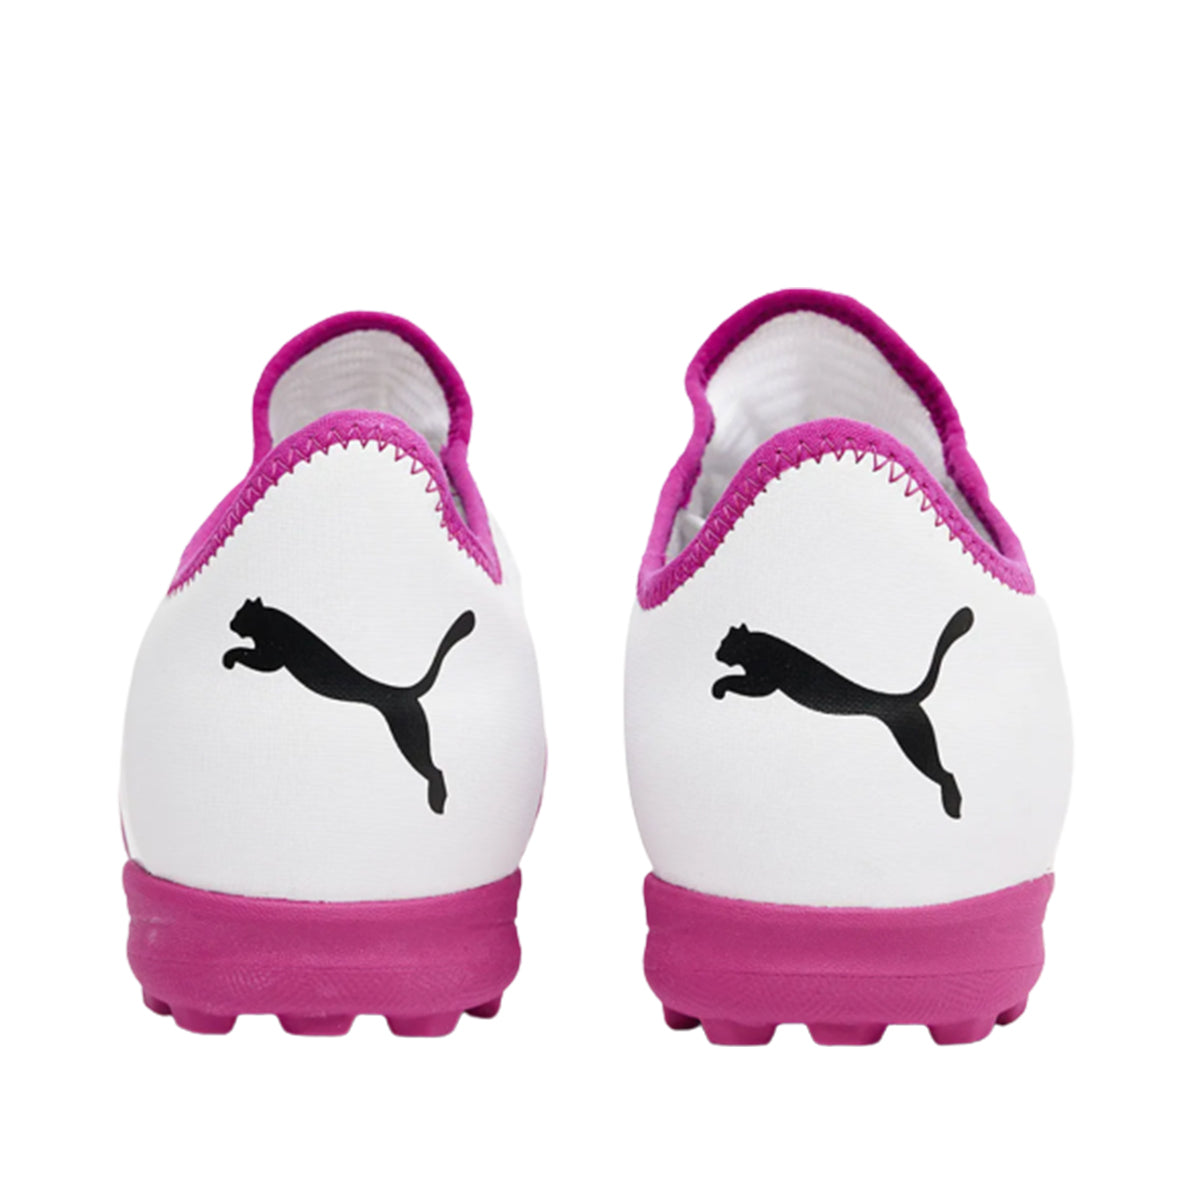 Puma Men's Future Z 4.3 TT Football Boots | 10677002 Shoes Puma 